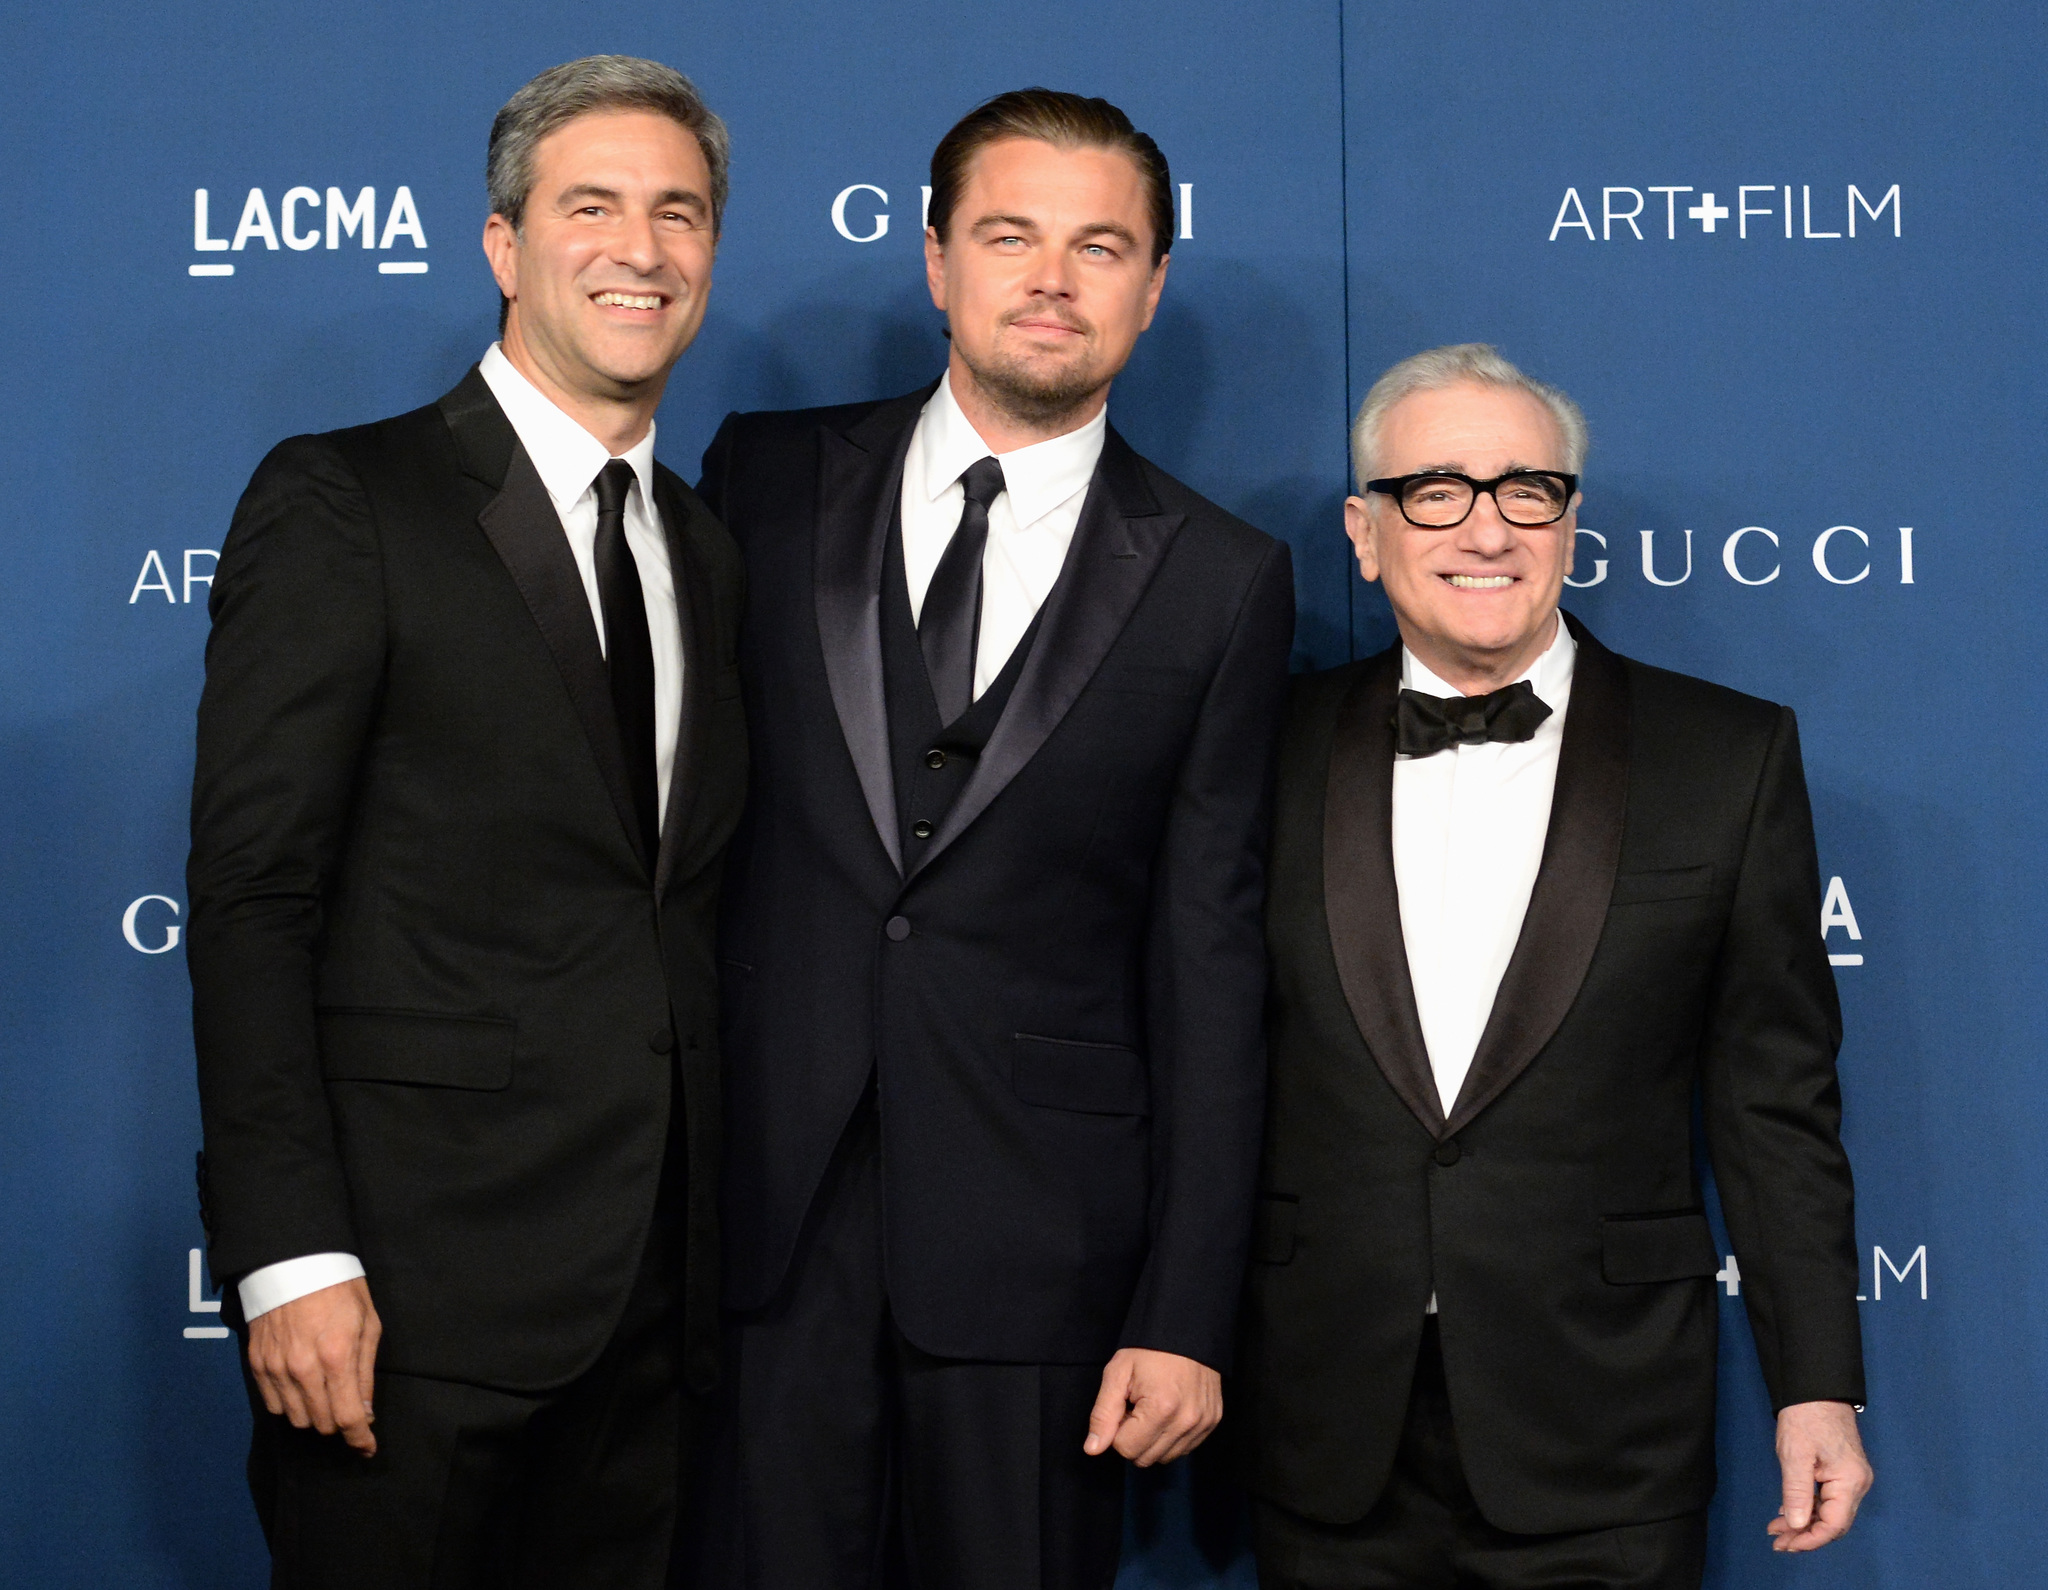 Leonardo DiCaprio, Martin Scorsese and Michael Govan